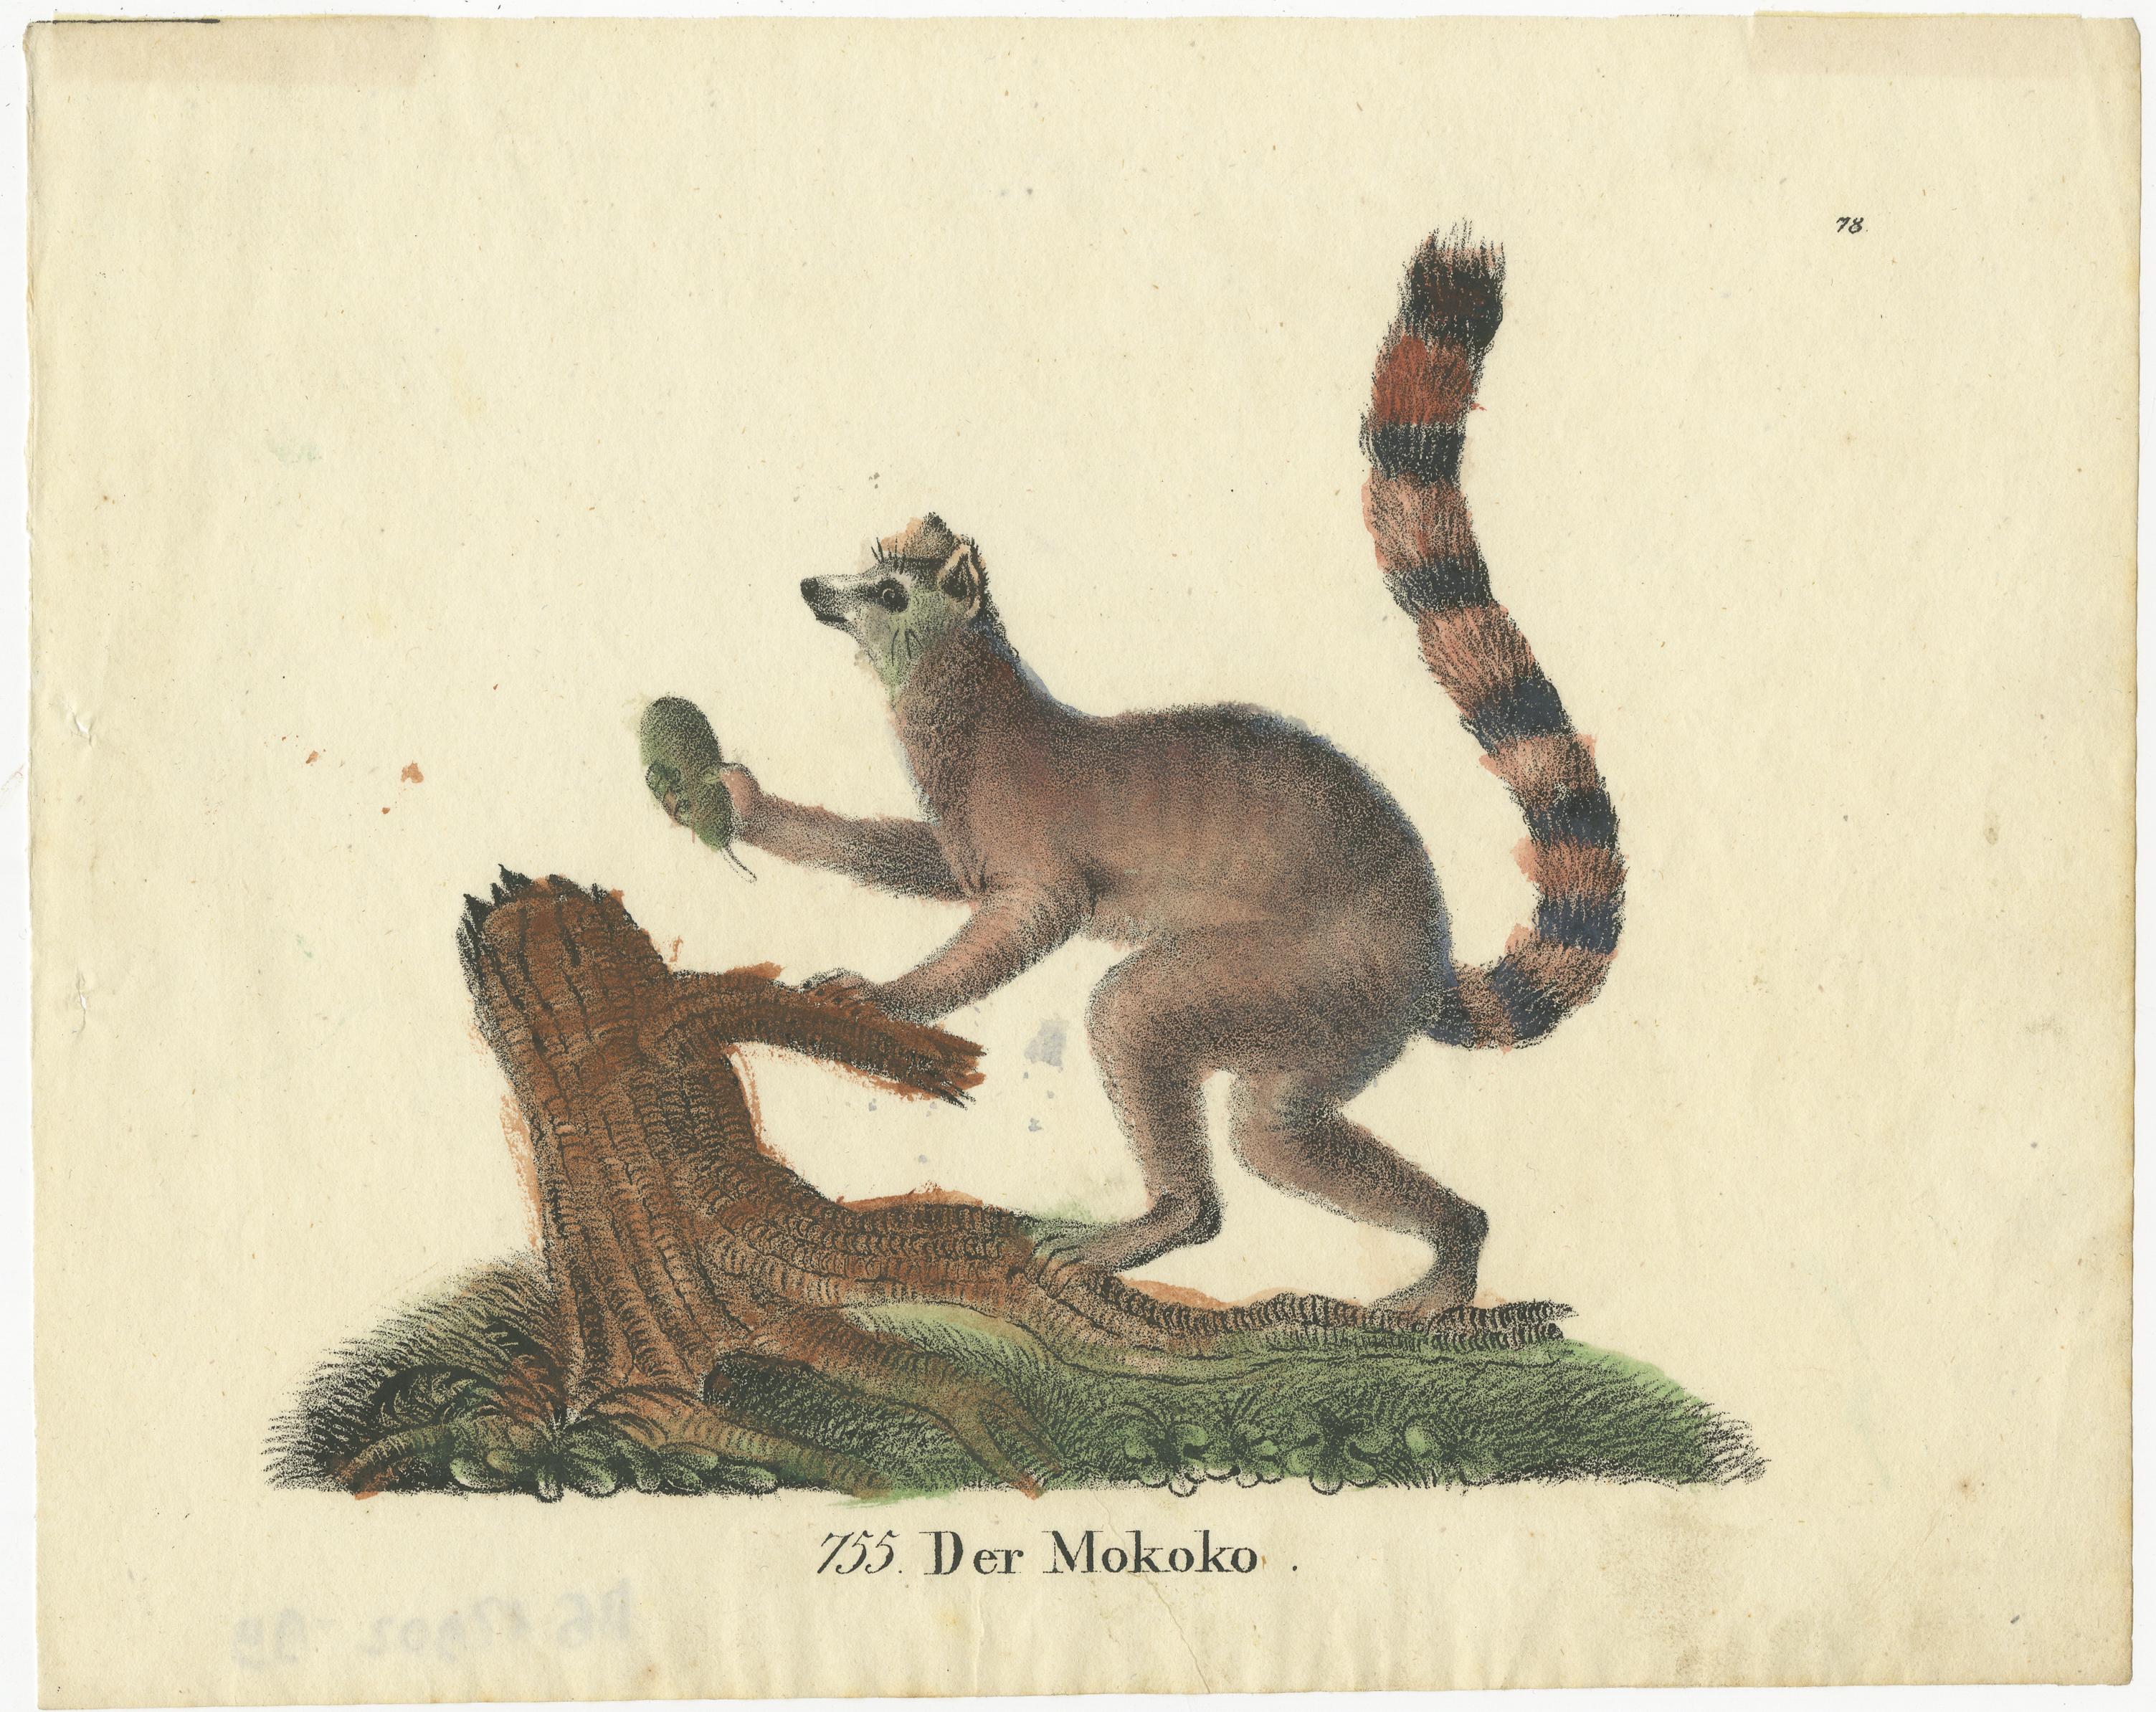 Antiker Originaldruck mit dem Titel 'Der Mokoko'. Antiker Druck eines Mokokos oder Ringschwanzlemuren (Lemur catta).

Der Ringelschwanzlemur (Lemur catta) ist ein großer strepsirrhiner Primat und der bekannteste Lemur aufgrund seines langen,